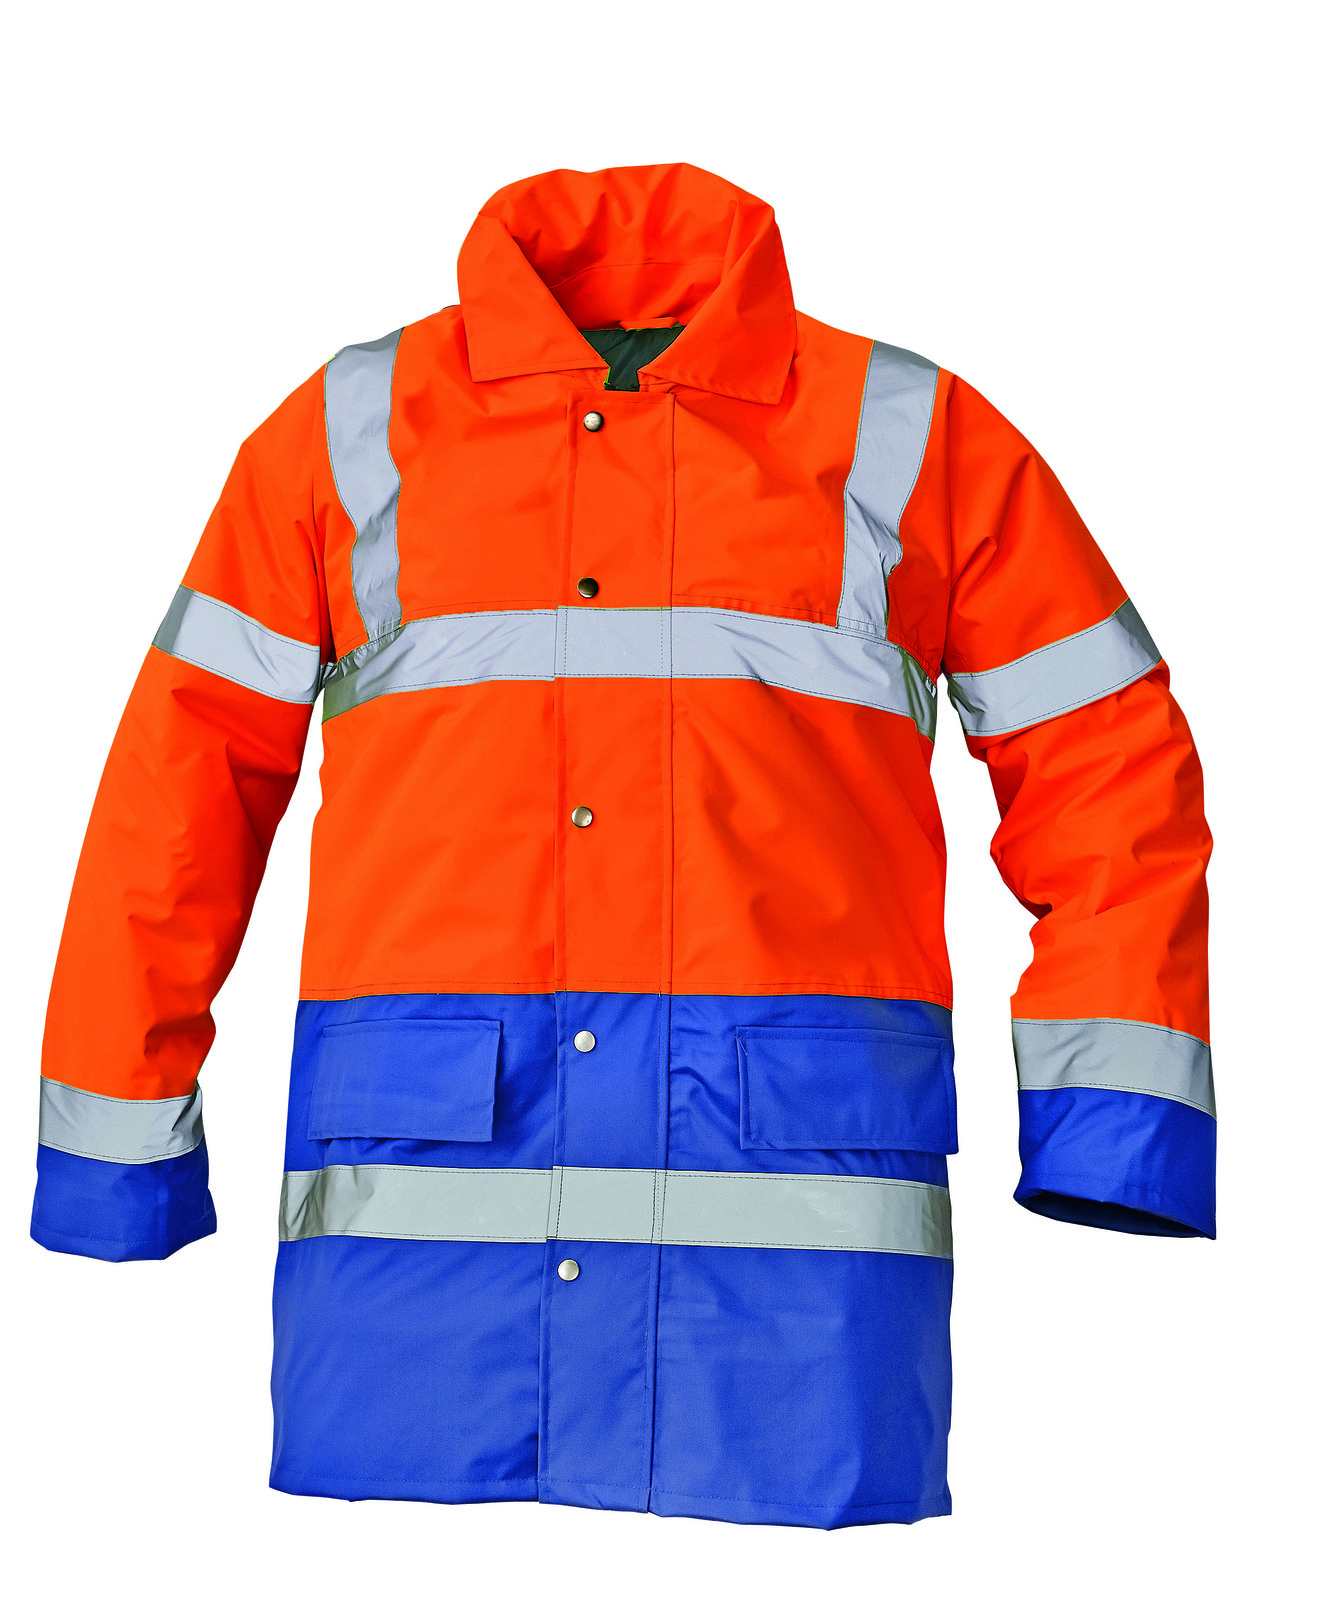 Ľahká zateplená reflexná bunda Sefton - veľkosť: M, farba: oranž/royal